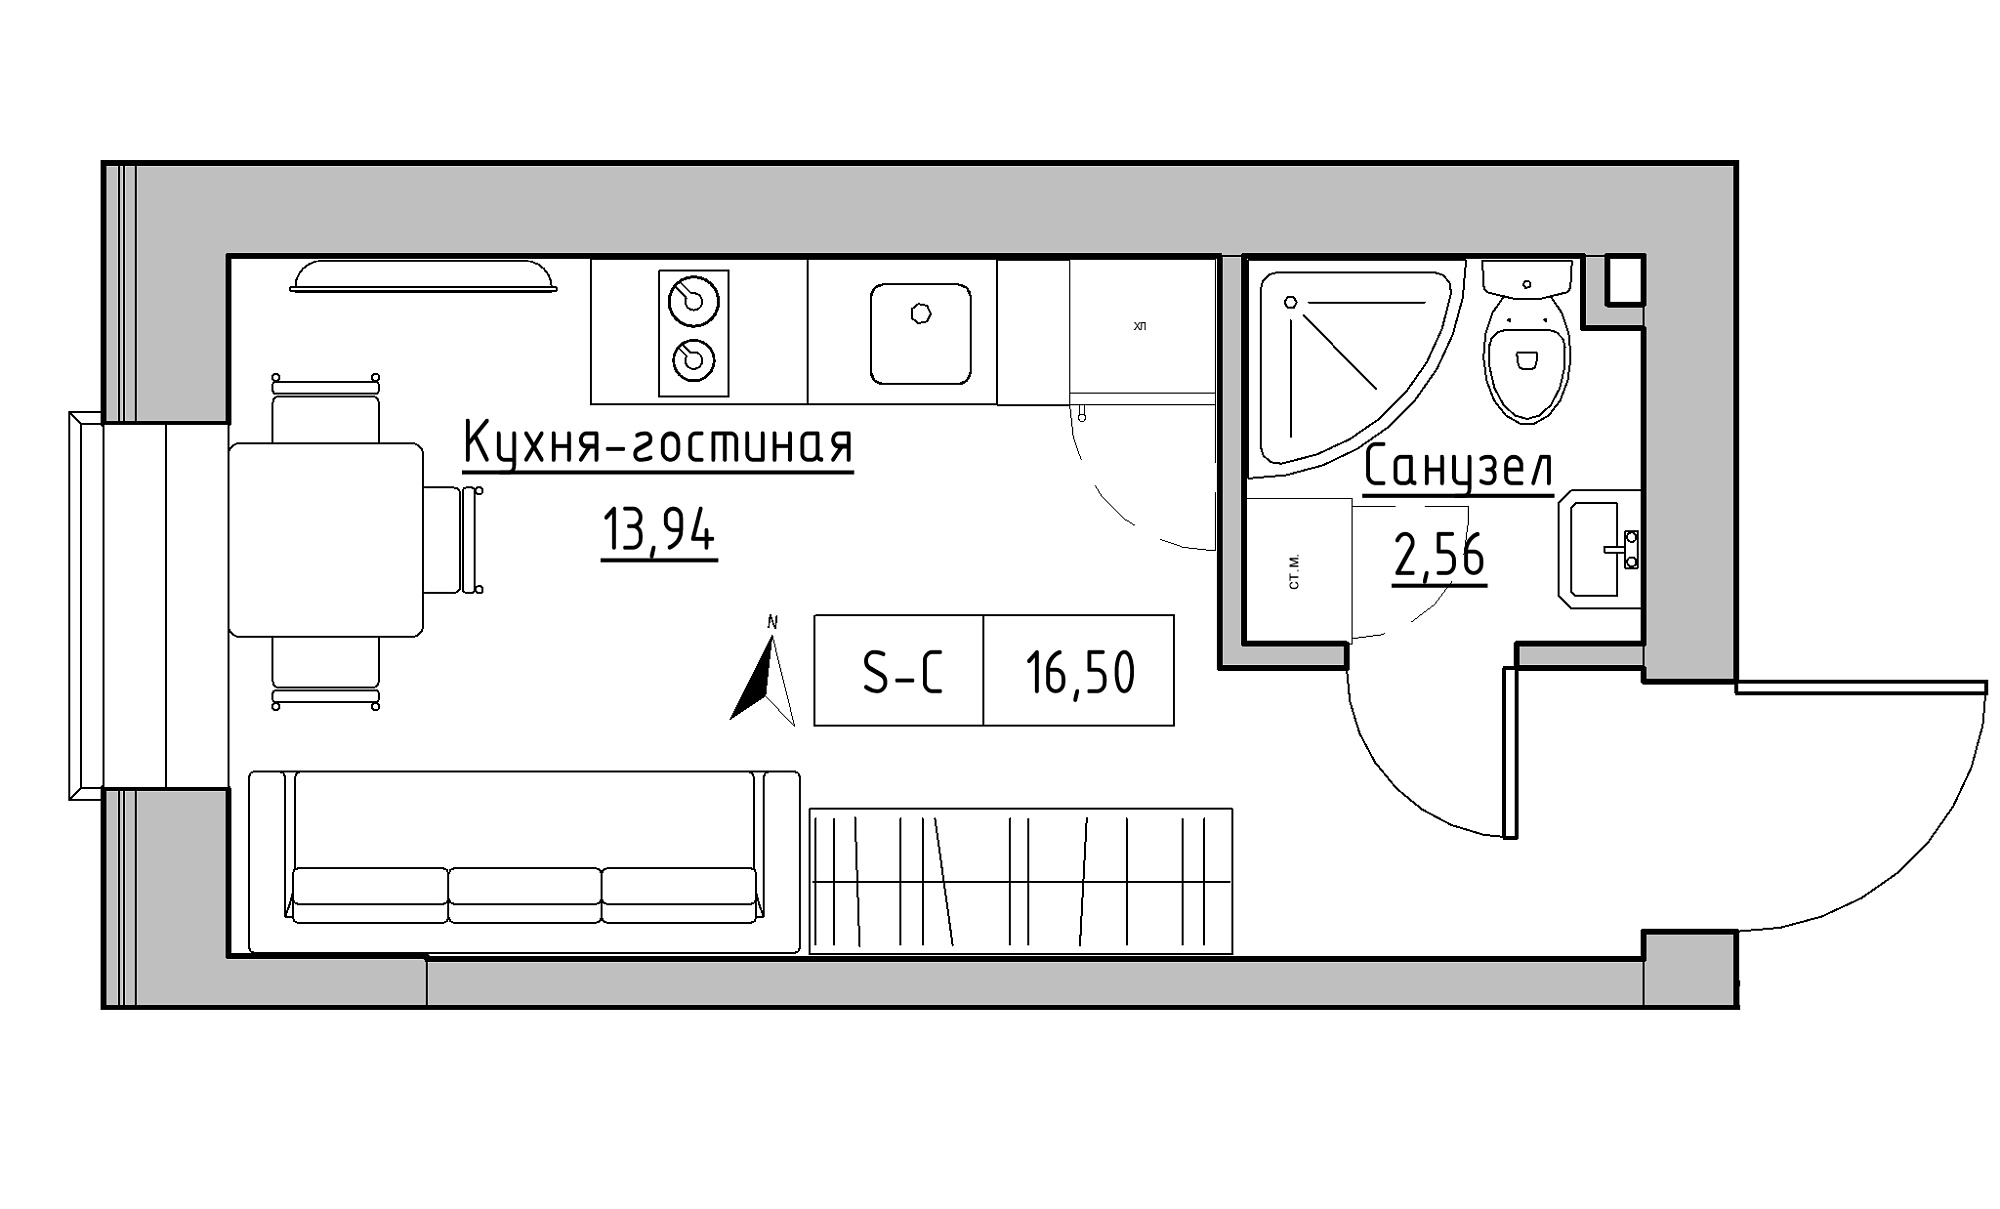 Планування Smart-квартира площею 16.5м2, KS-016-02/0011.